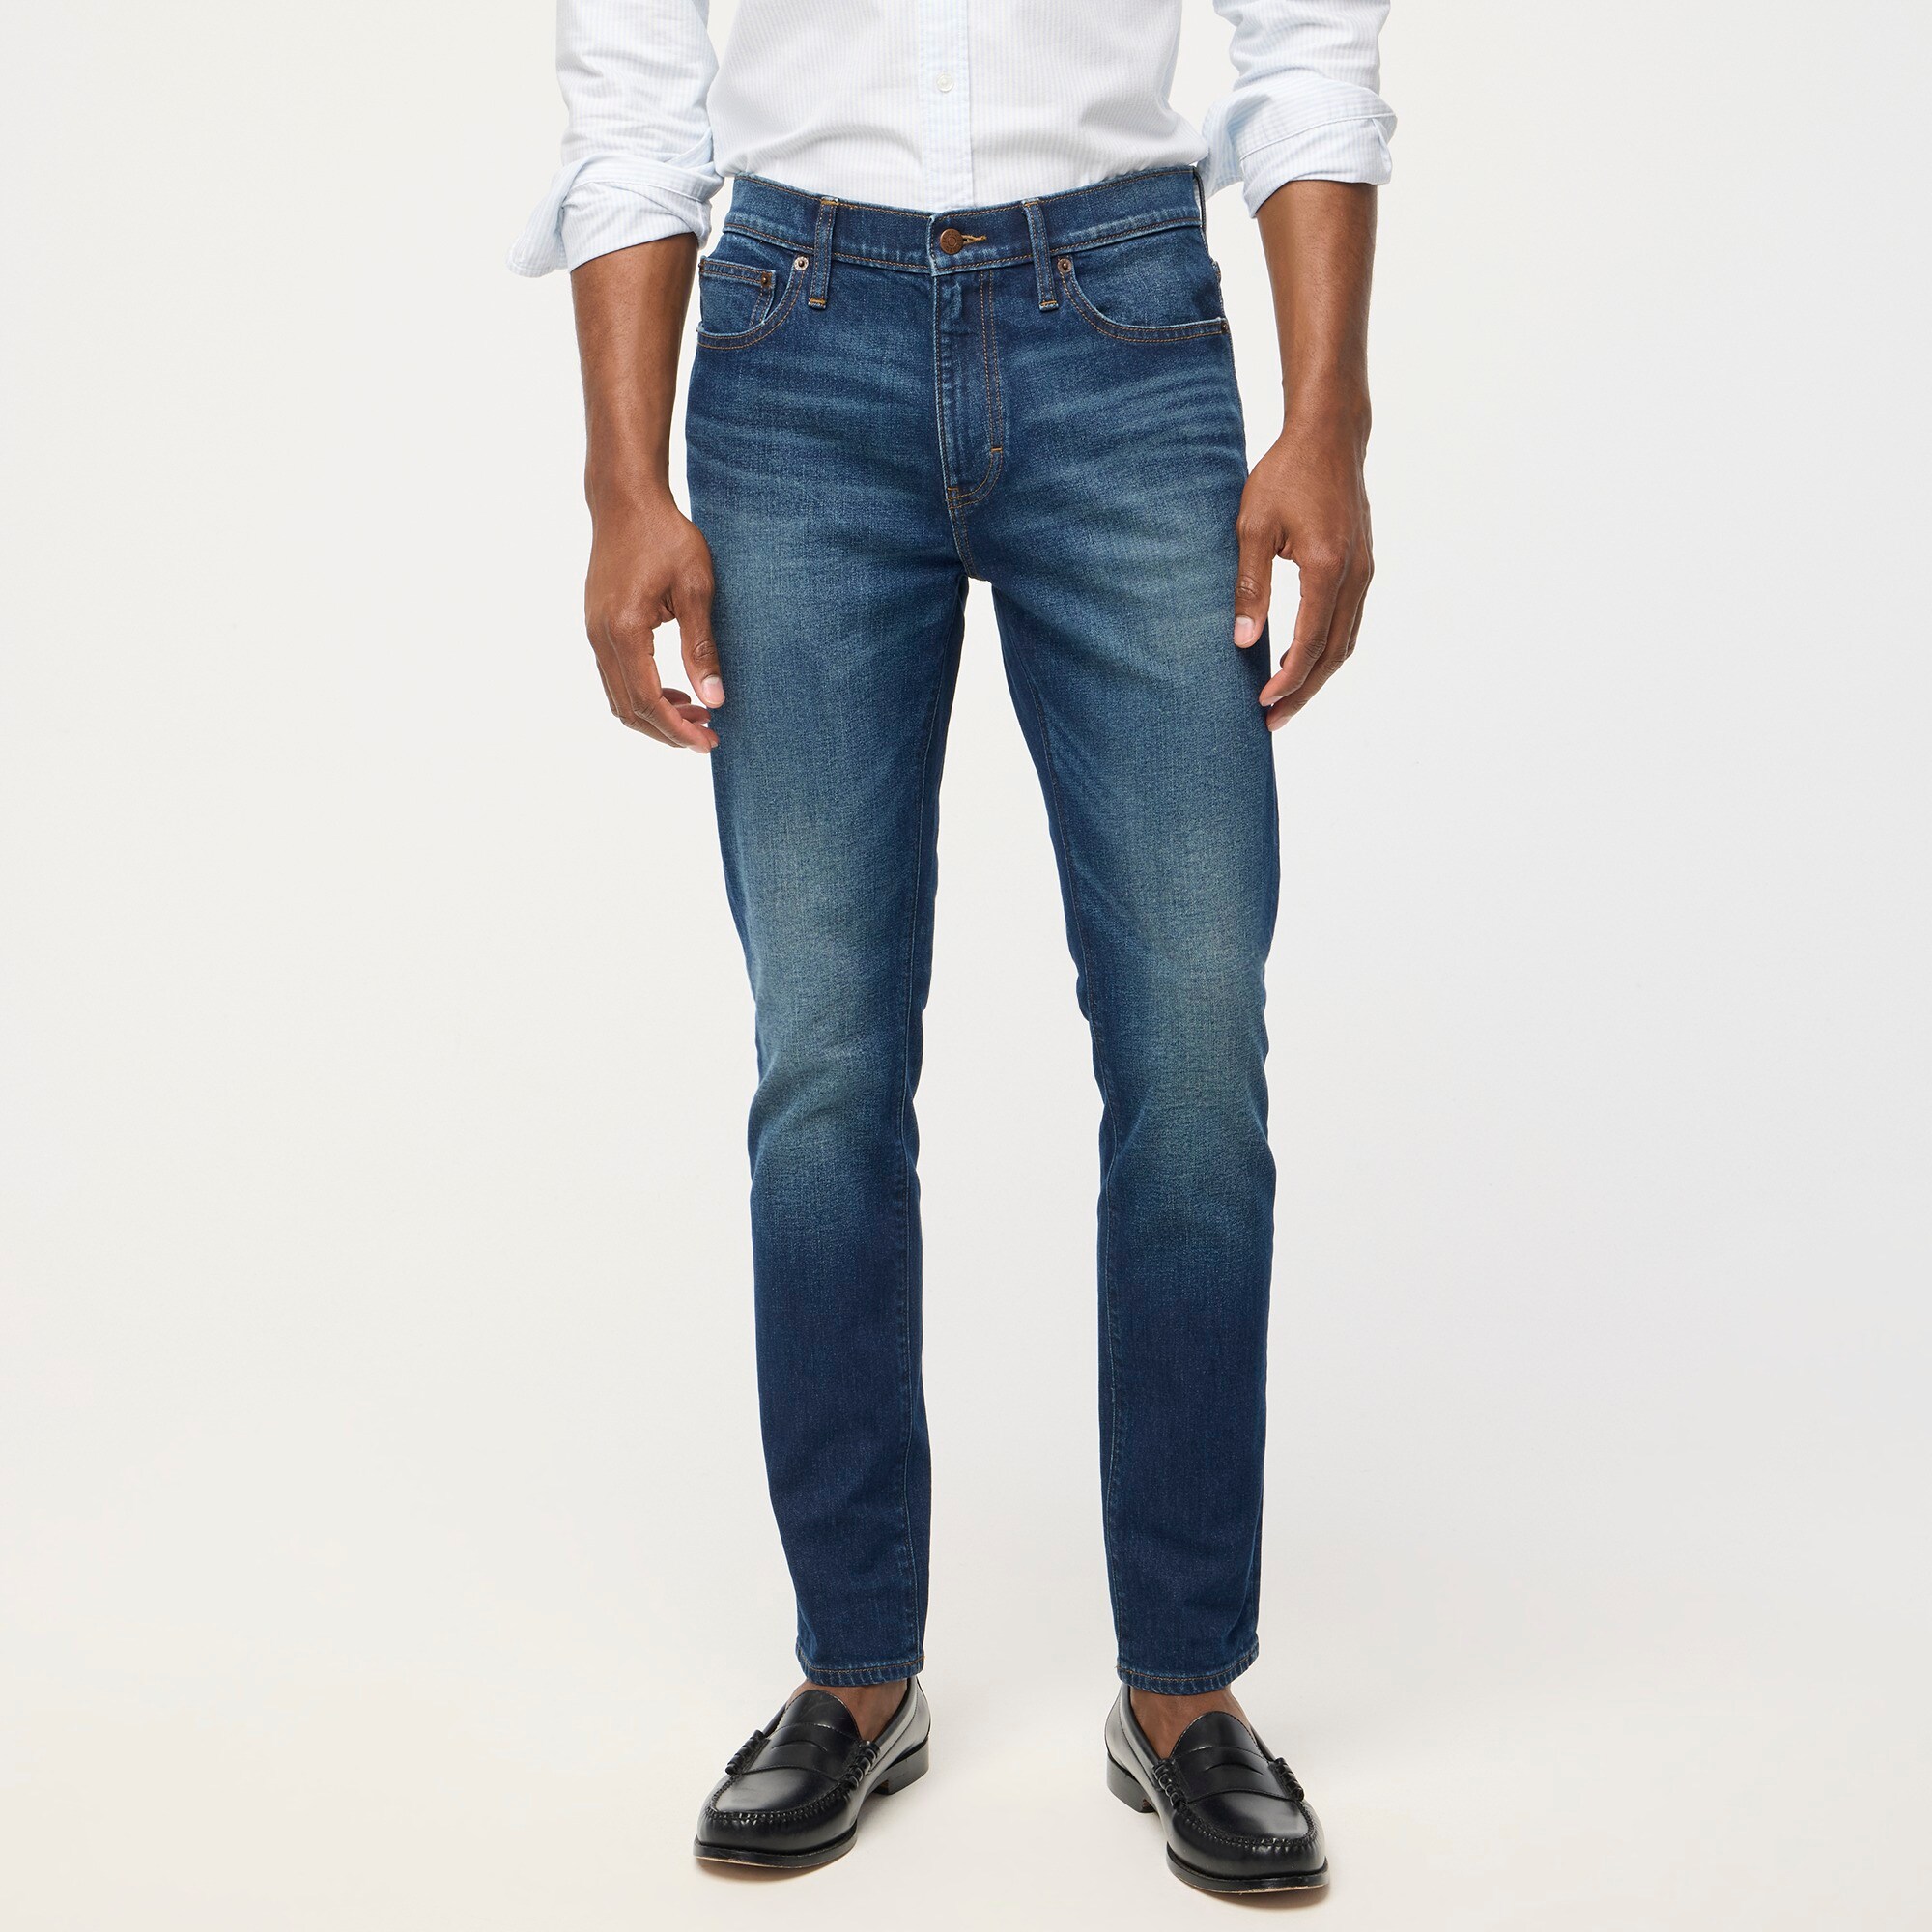  Slim-fit jean in signature flex